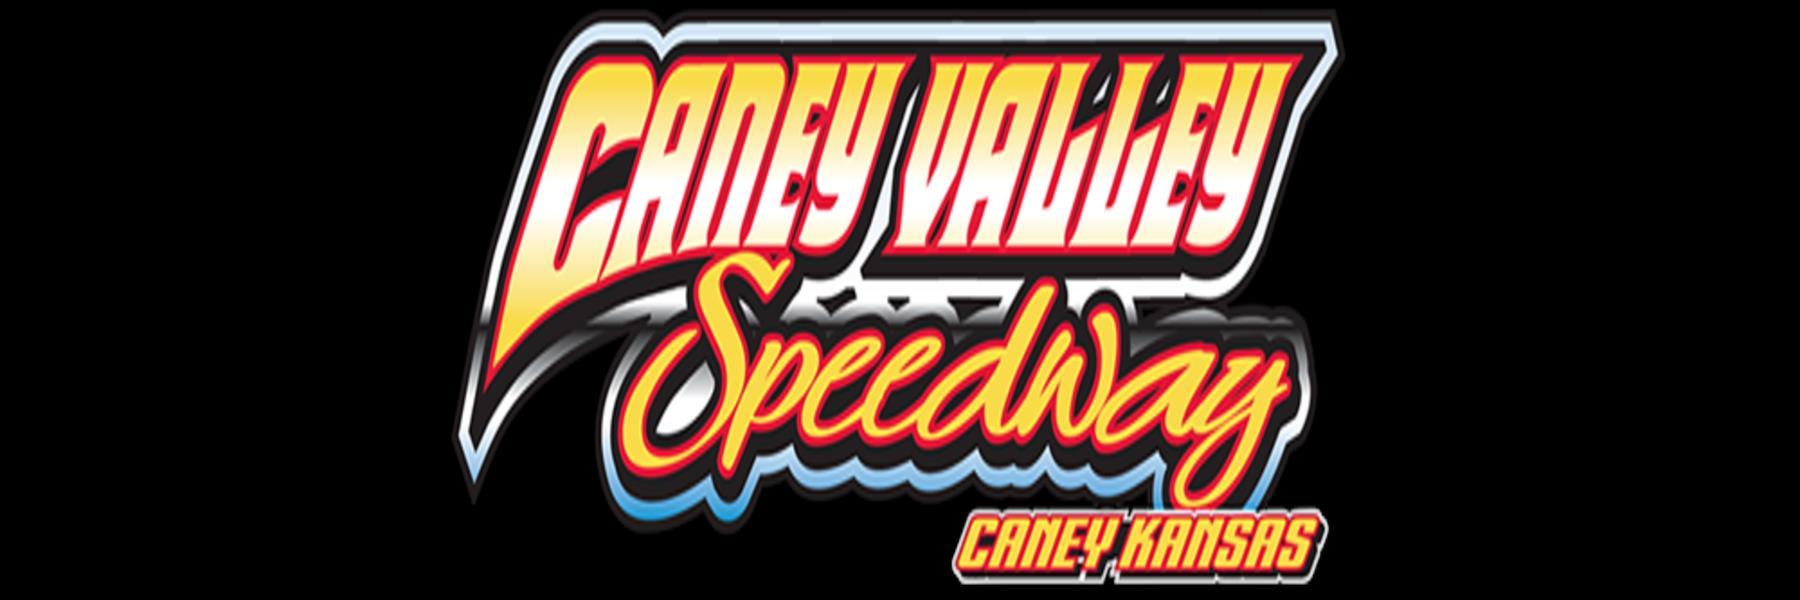 5/21/2022 - Caney Valley Speedway